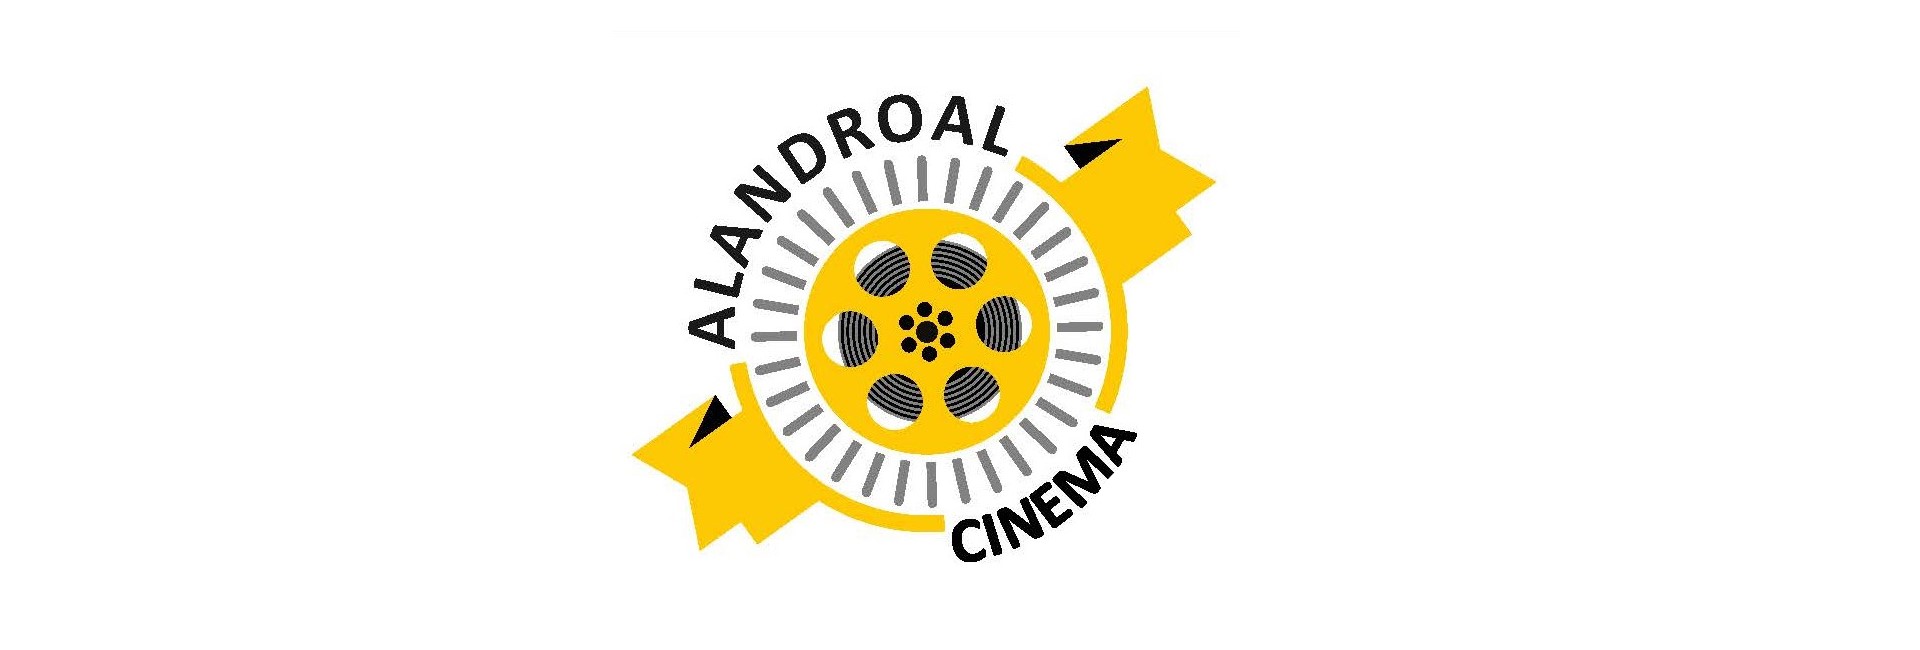 Cinema Alandroal – mês de março